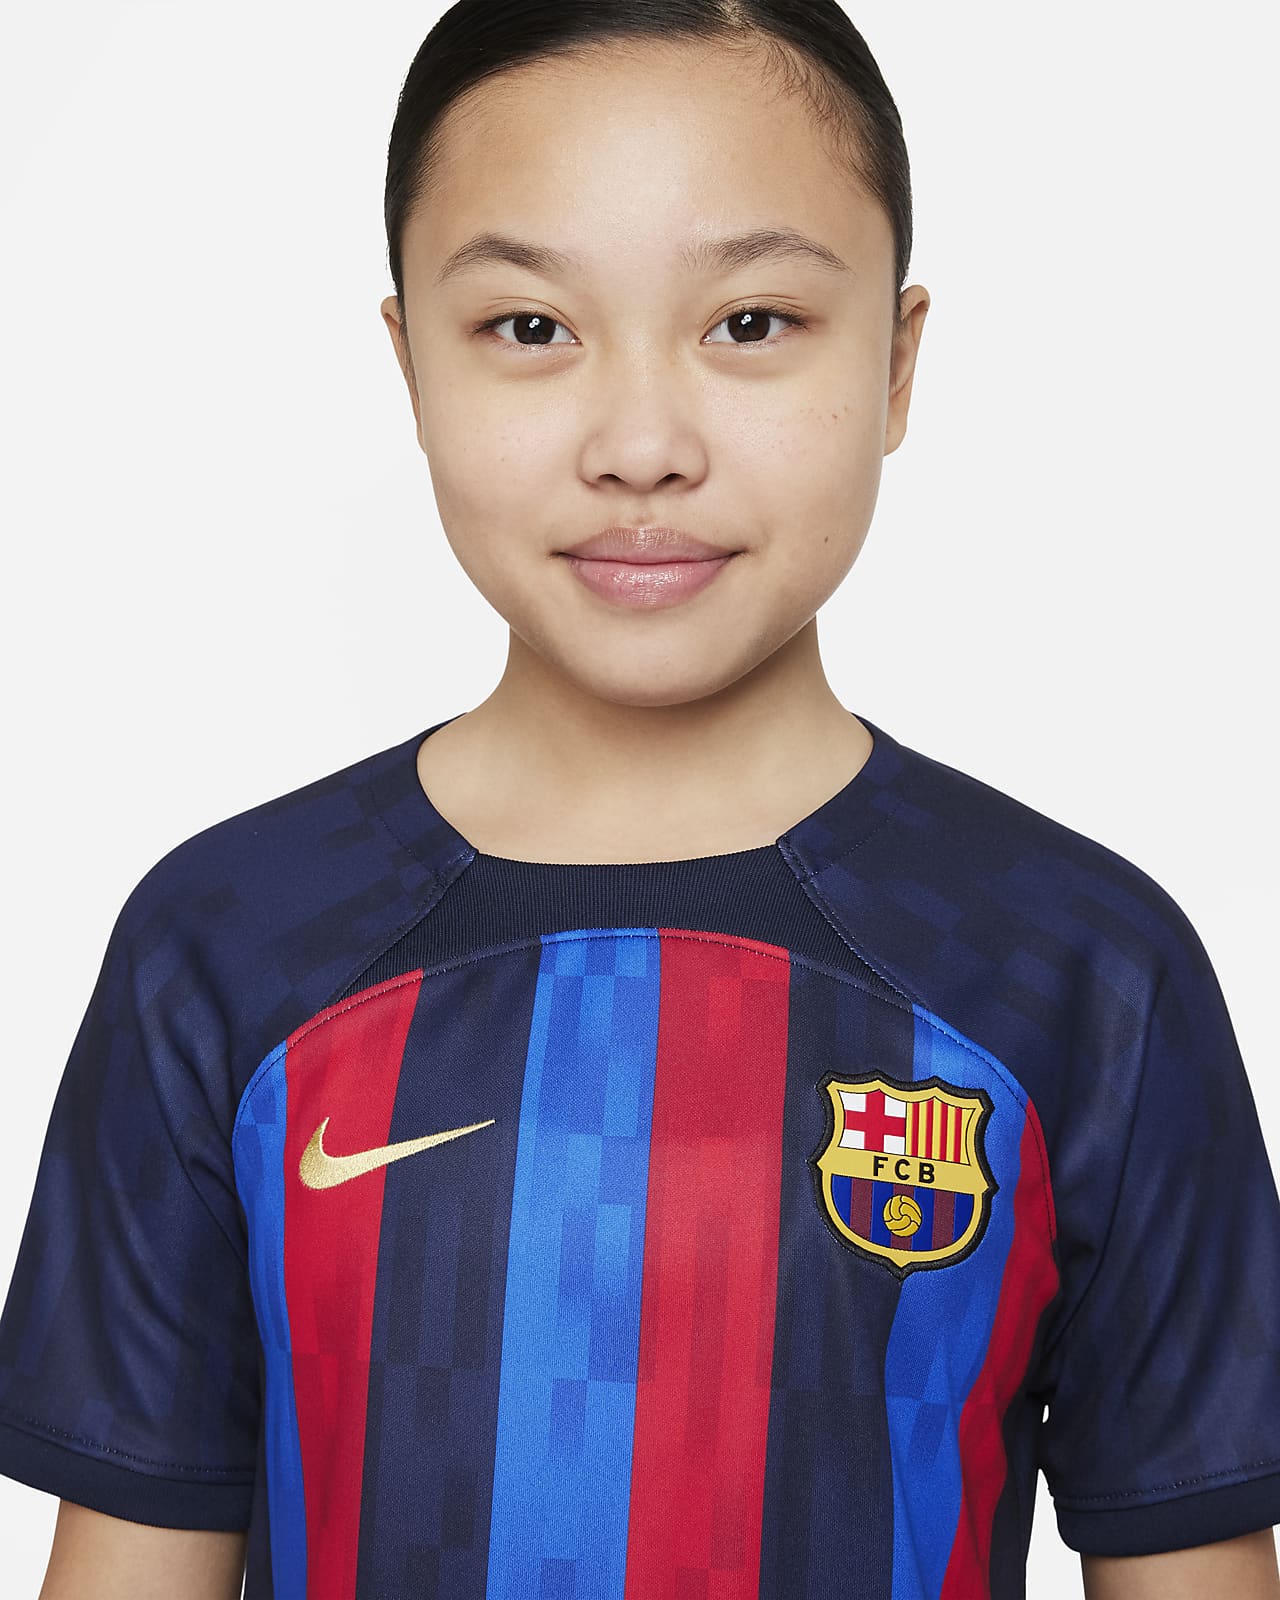 Integral Mañana Elección Jersey de fútbol Nike Dri-FIT para niños talla grande del FC Barcelona  local 2022/23 Stadium. Nike.com